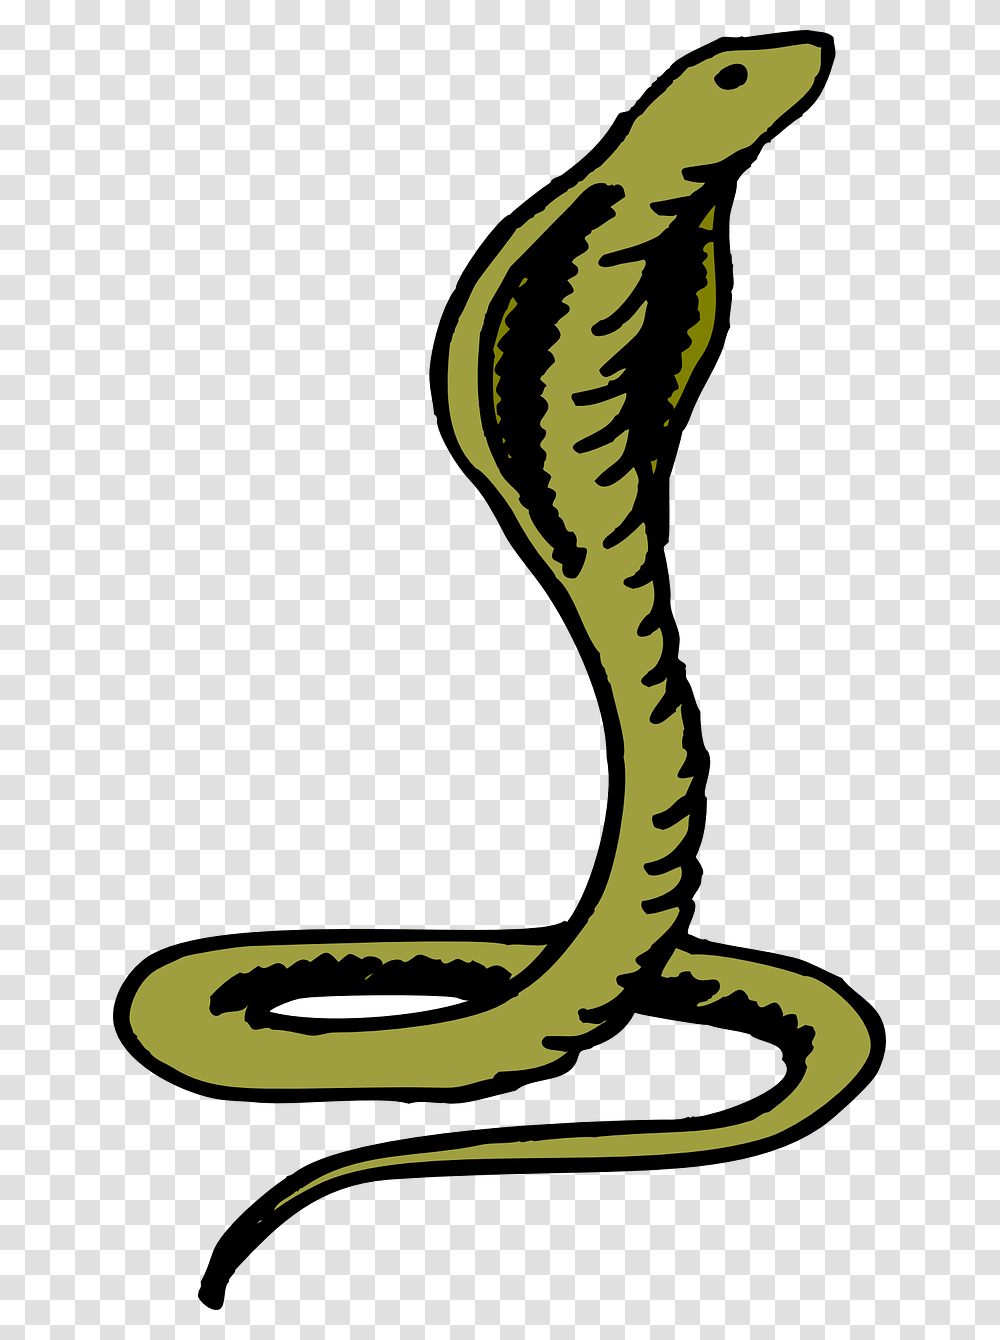 Green Cobra, Reptile, Animal, Snake, Bird Transparent Png